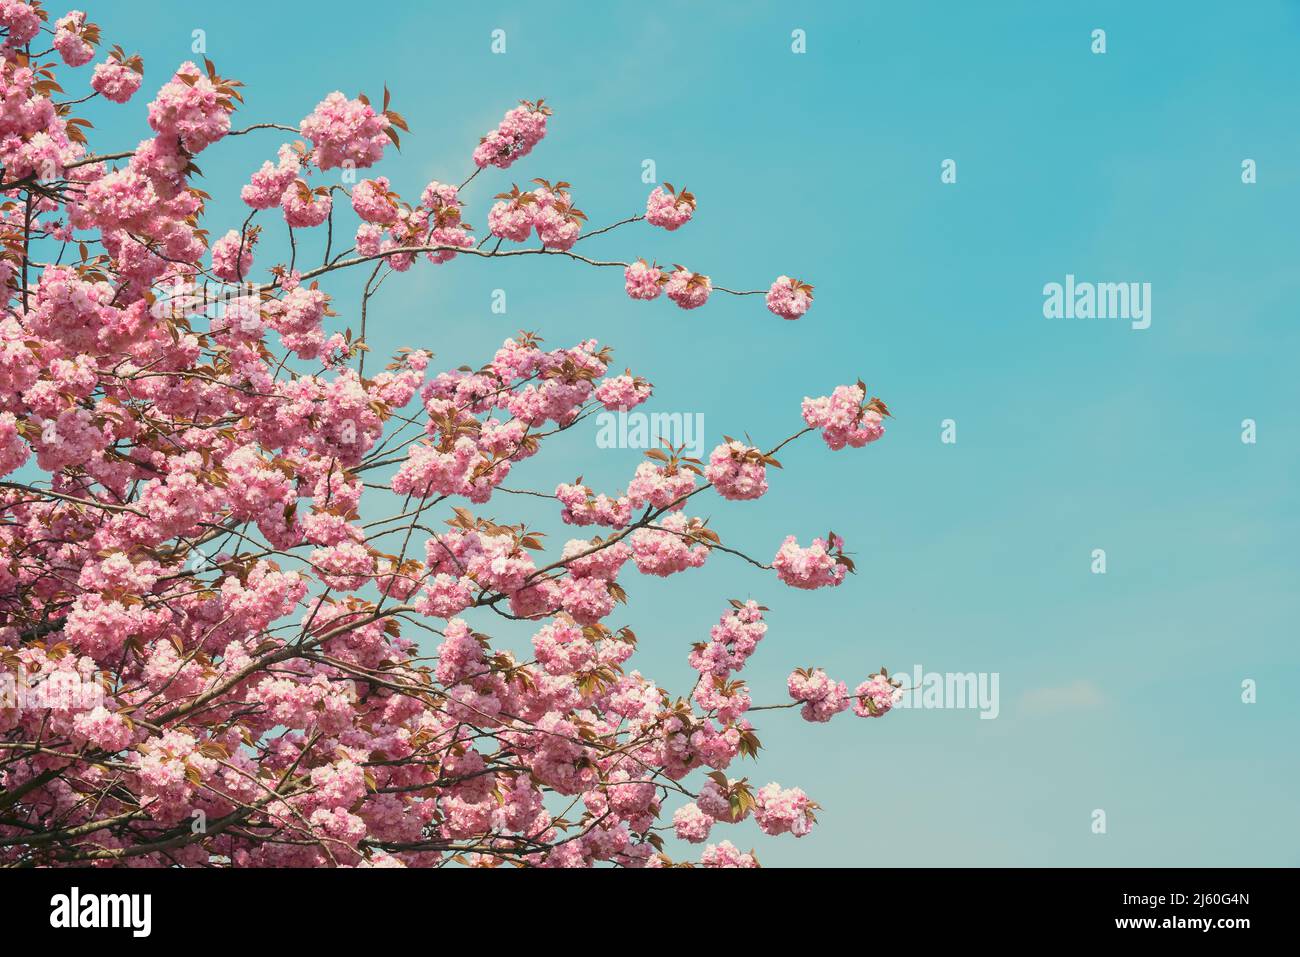 Fiore di ciliegio in fiore sull'albero con sfondo cielo blu Foto Stock